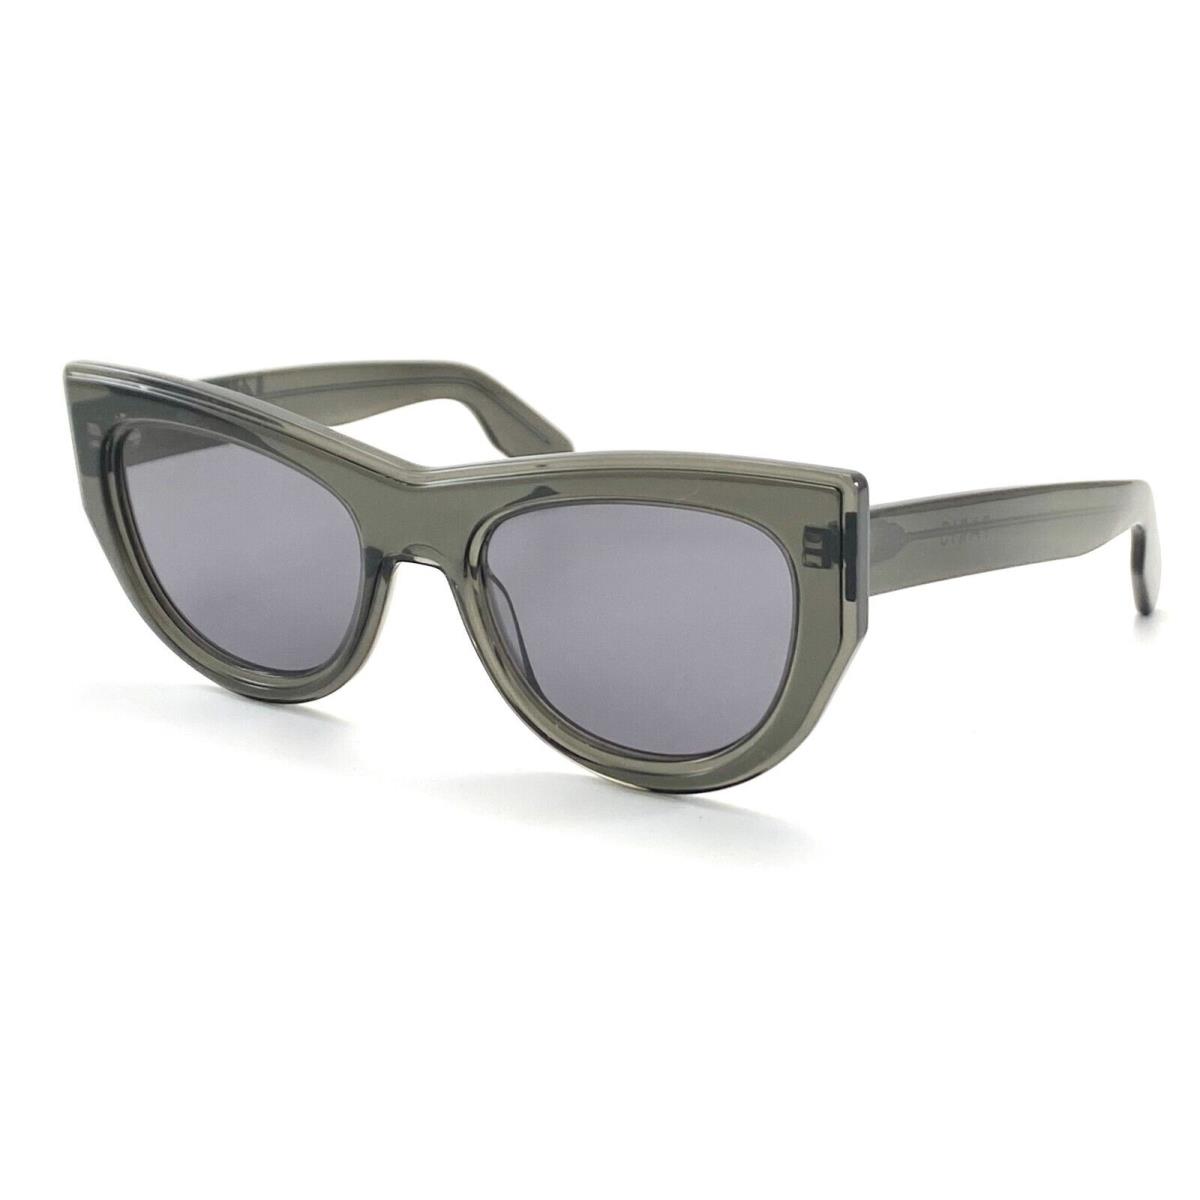 Kenzo Paris KZ40022I 05A Gray Sunglasses 53-21 150 W/case